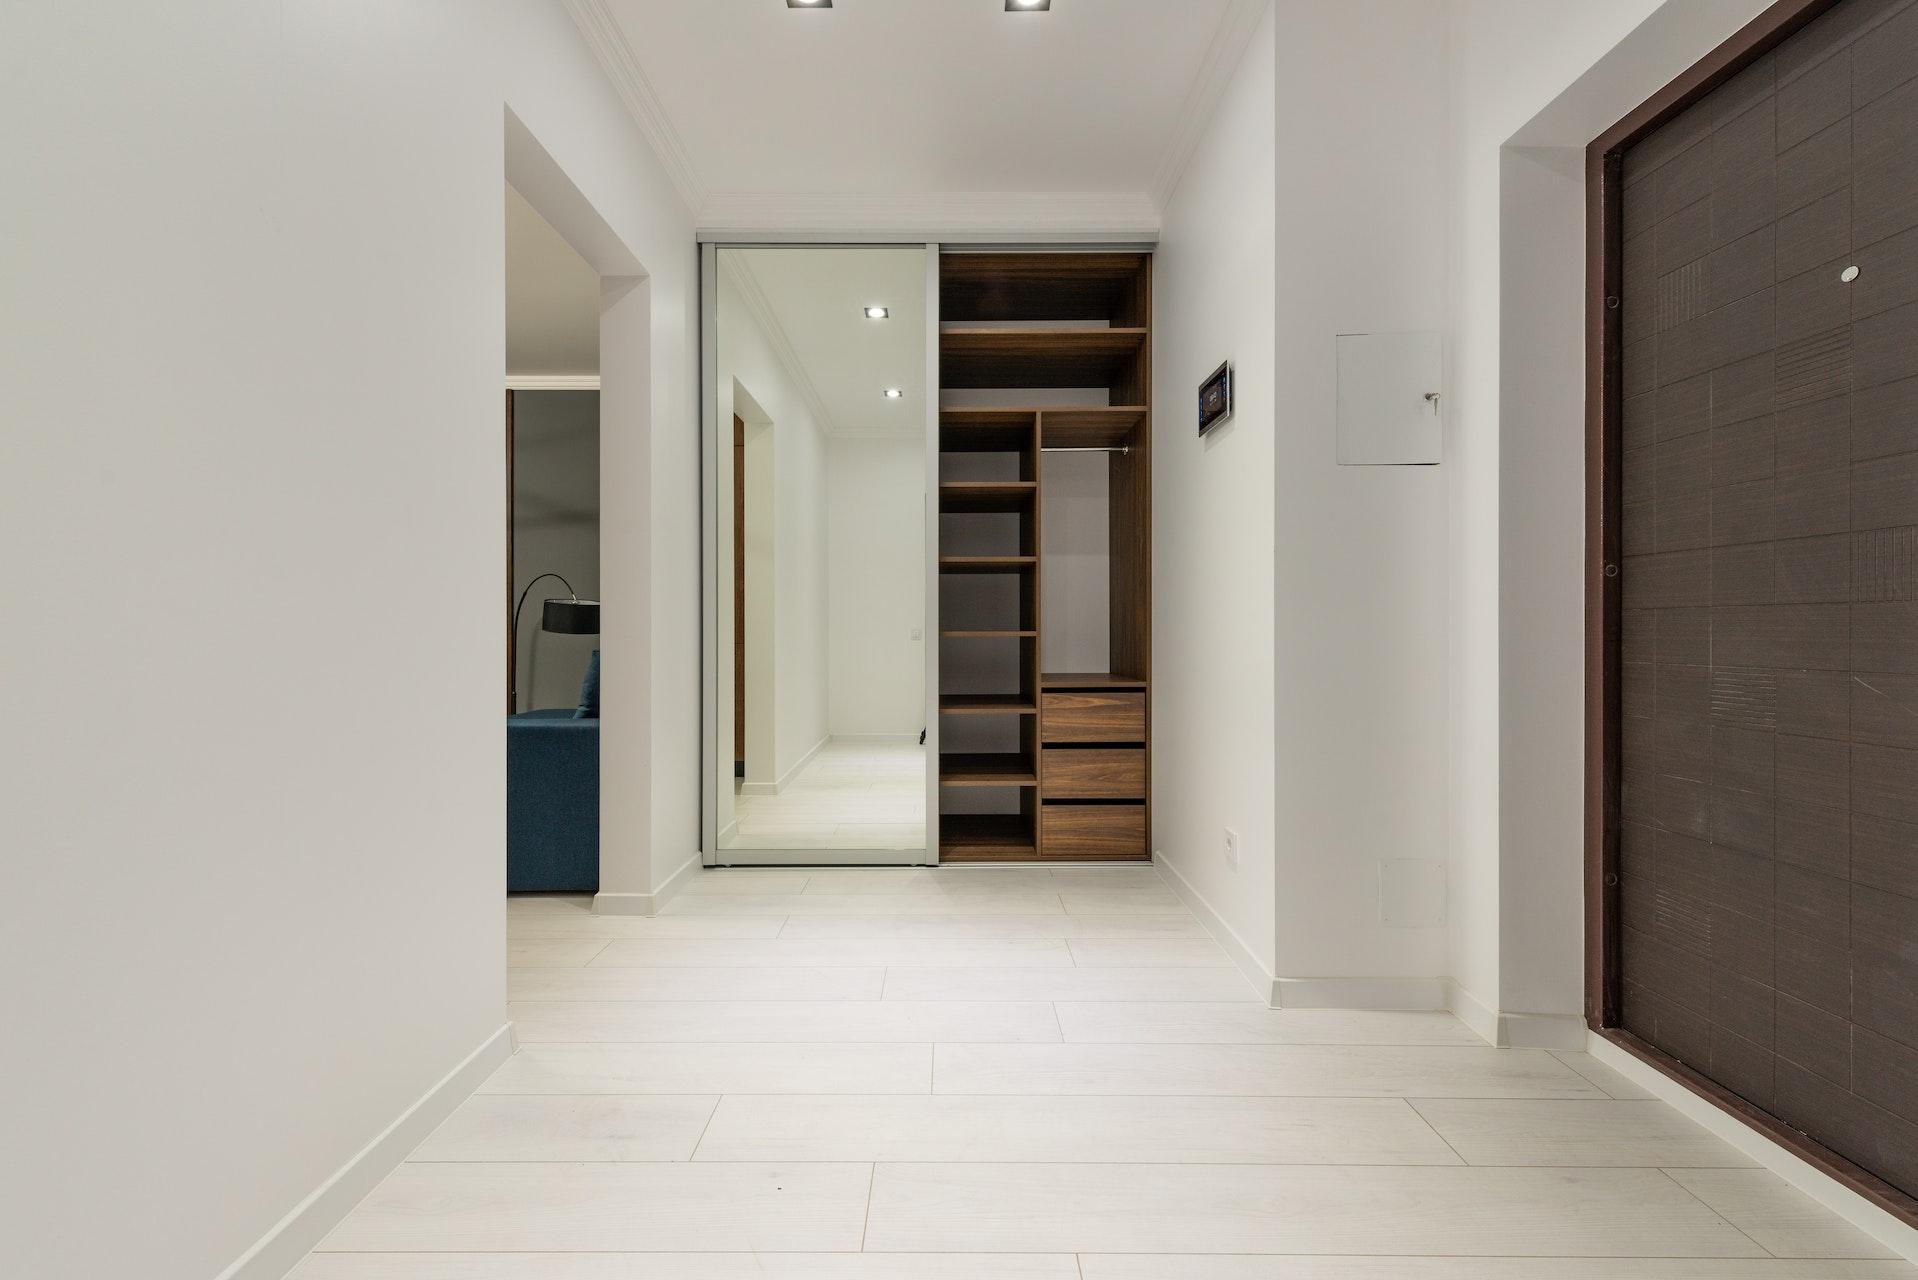 Дизайн холла в частном доме и квартире: с лестницей, прихожей и коридором